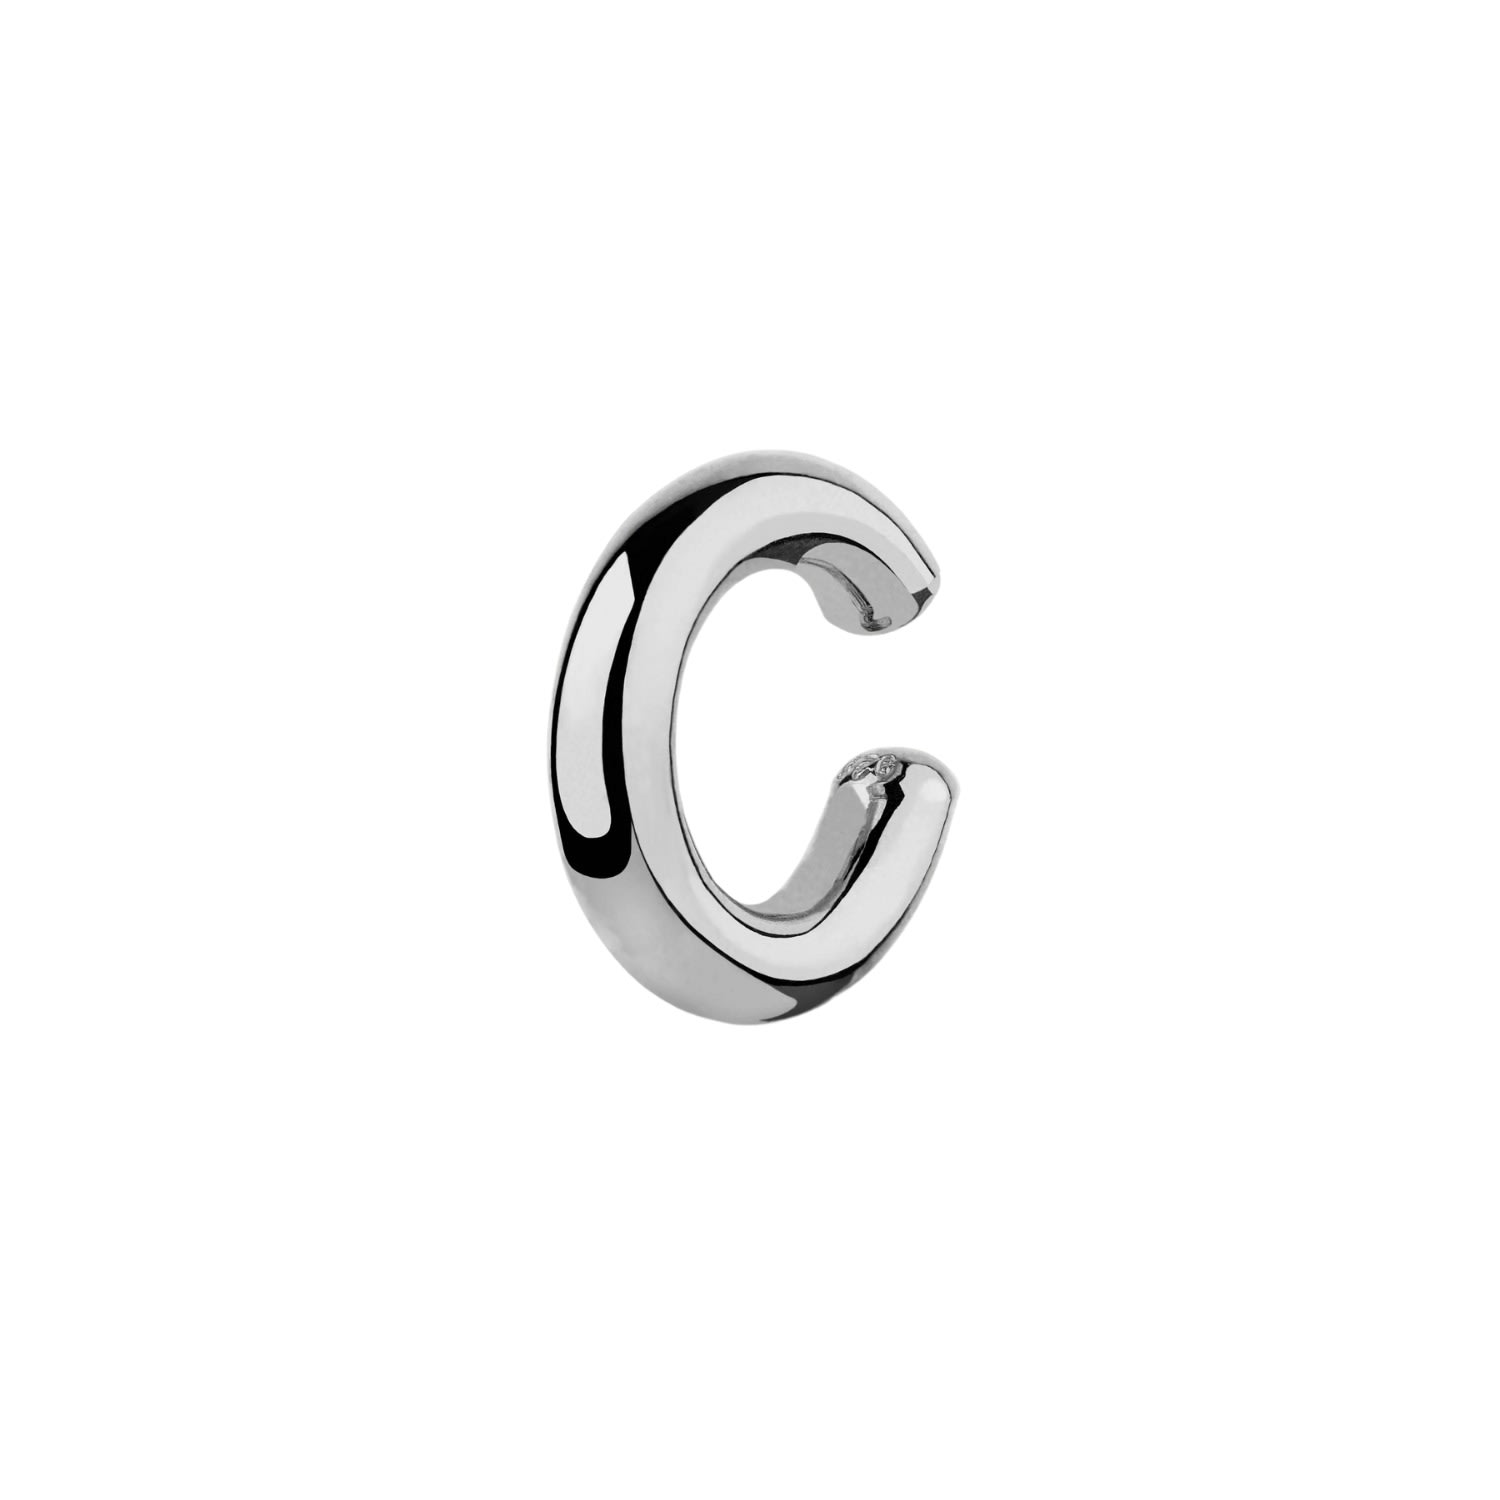 Spero London Women's Chunky Sterling Silver Ear Cuff No Piercing 1 Piece - Silver In White